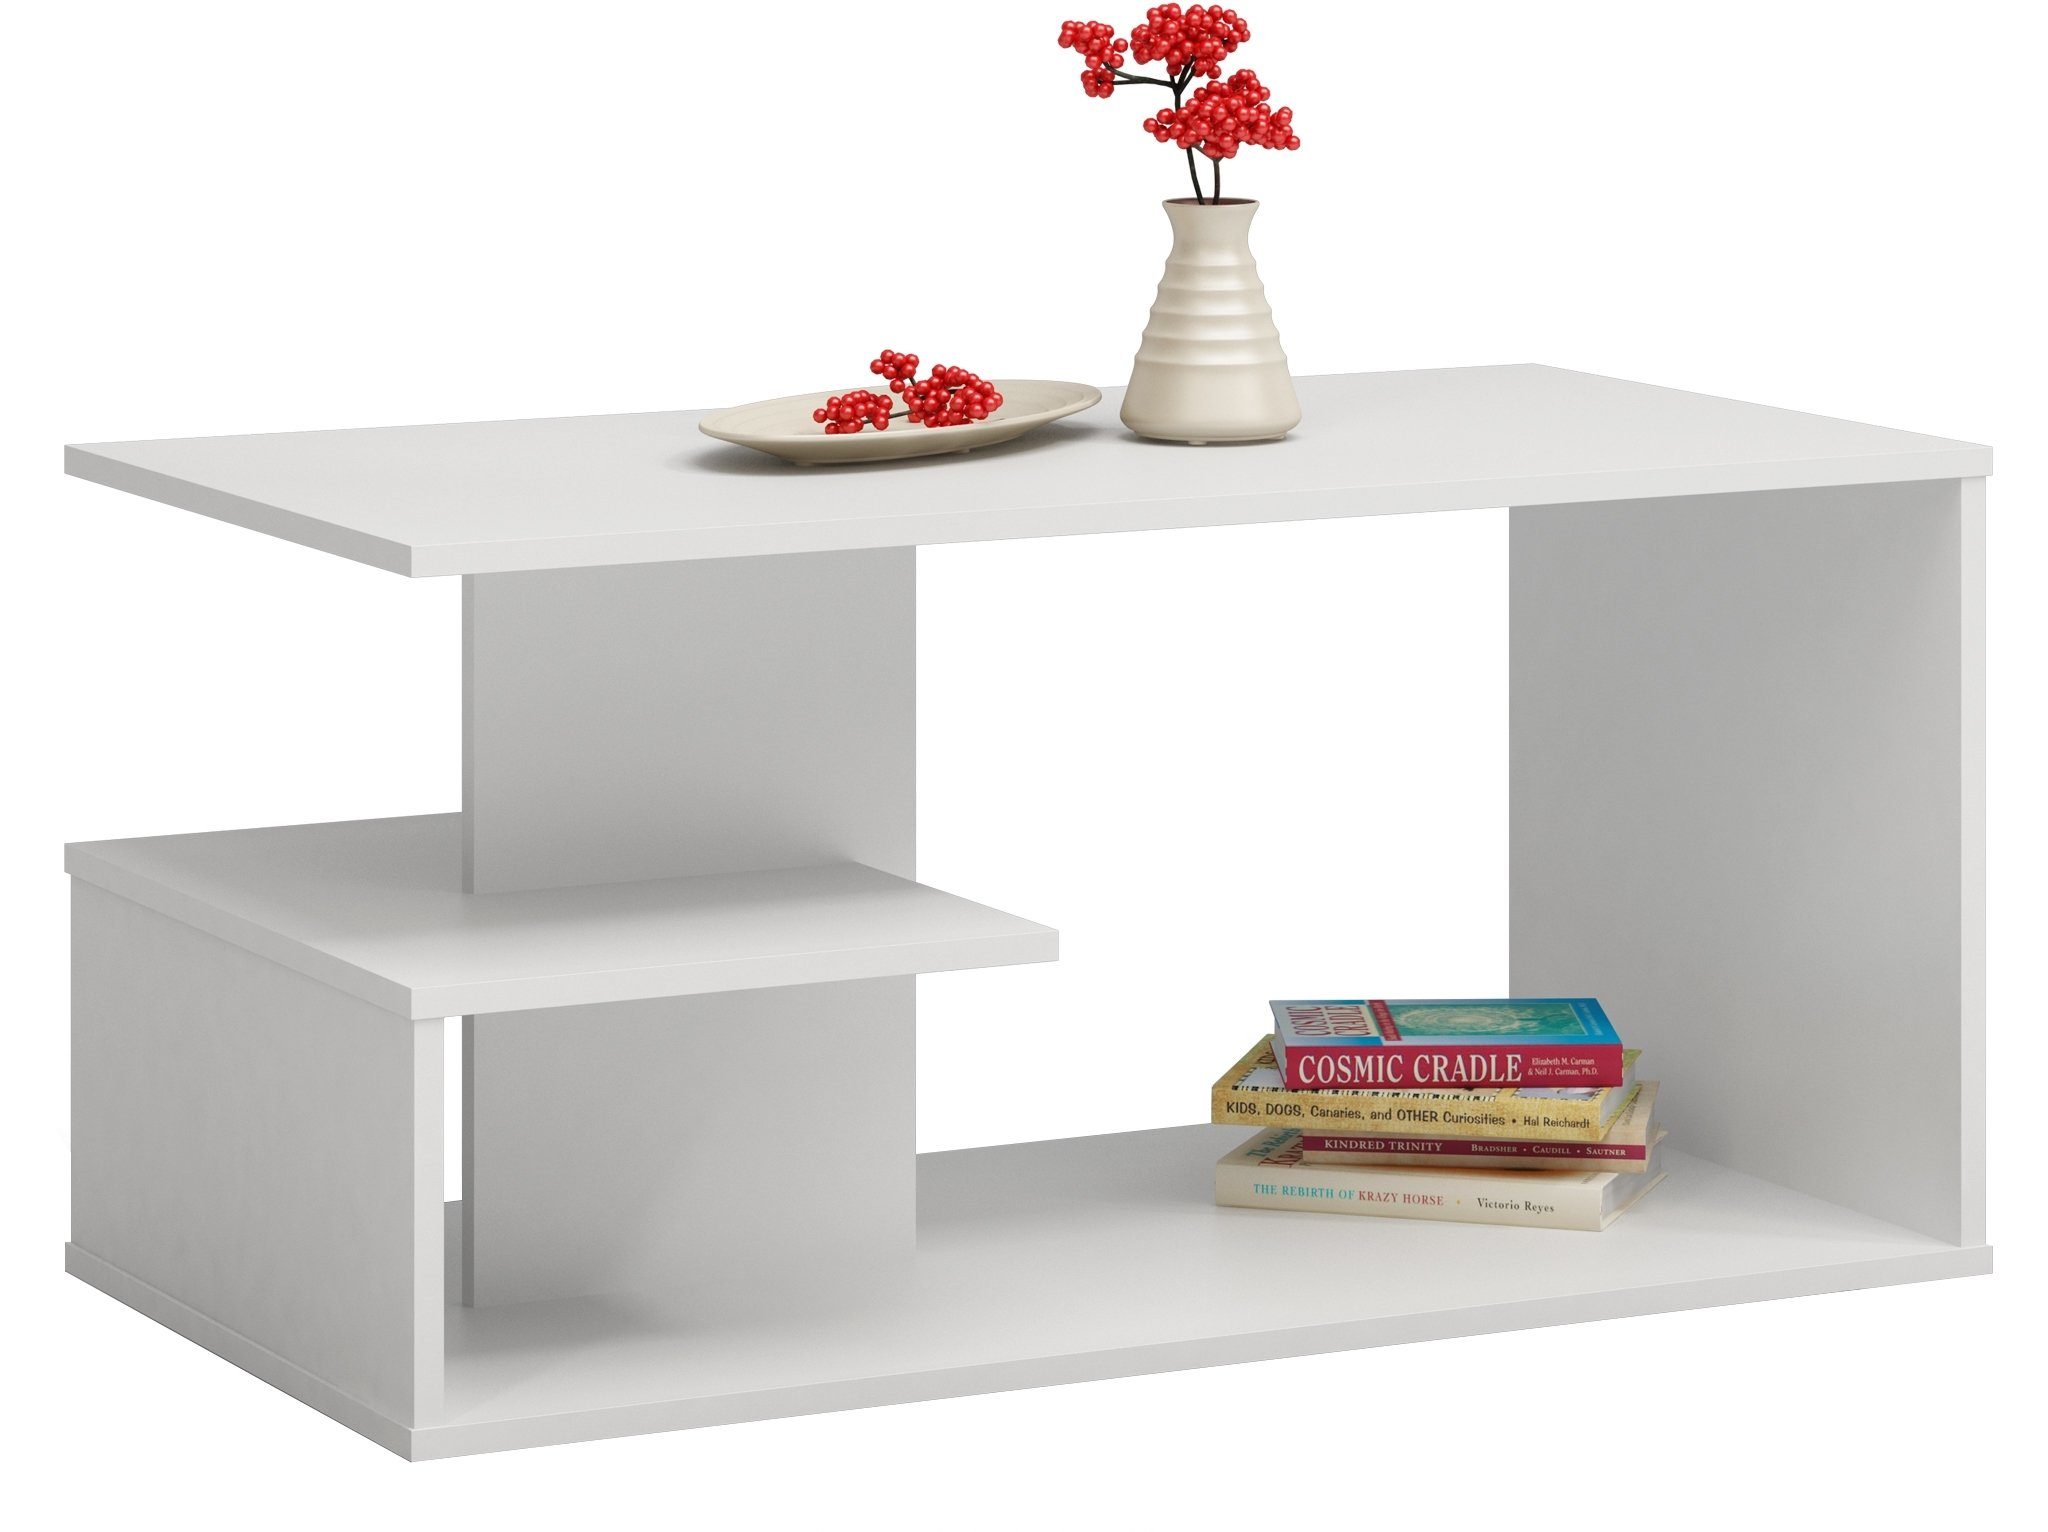 Home Collective Couchtisch Beistelltisch Loft Design, kratzfeste Oberfläche Wohnzimmer Couch, Tisch Beistell 91x51x40 cm (LxBxH), weiß